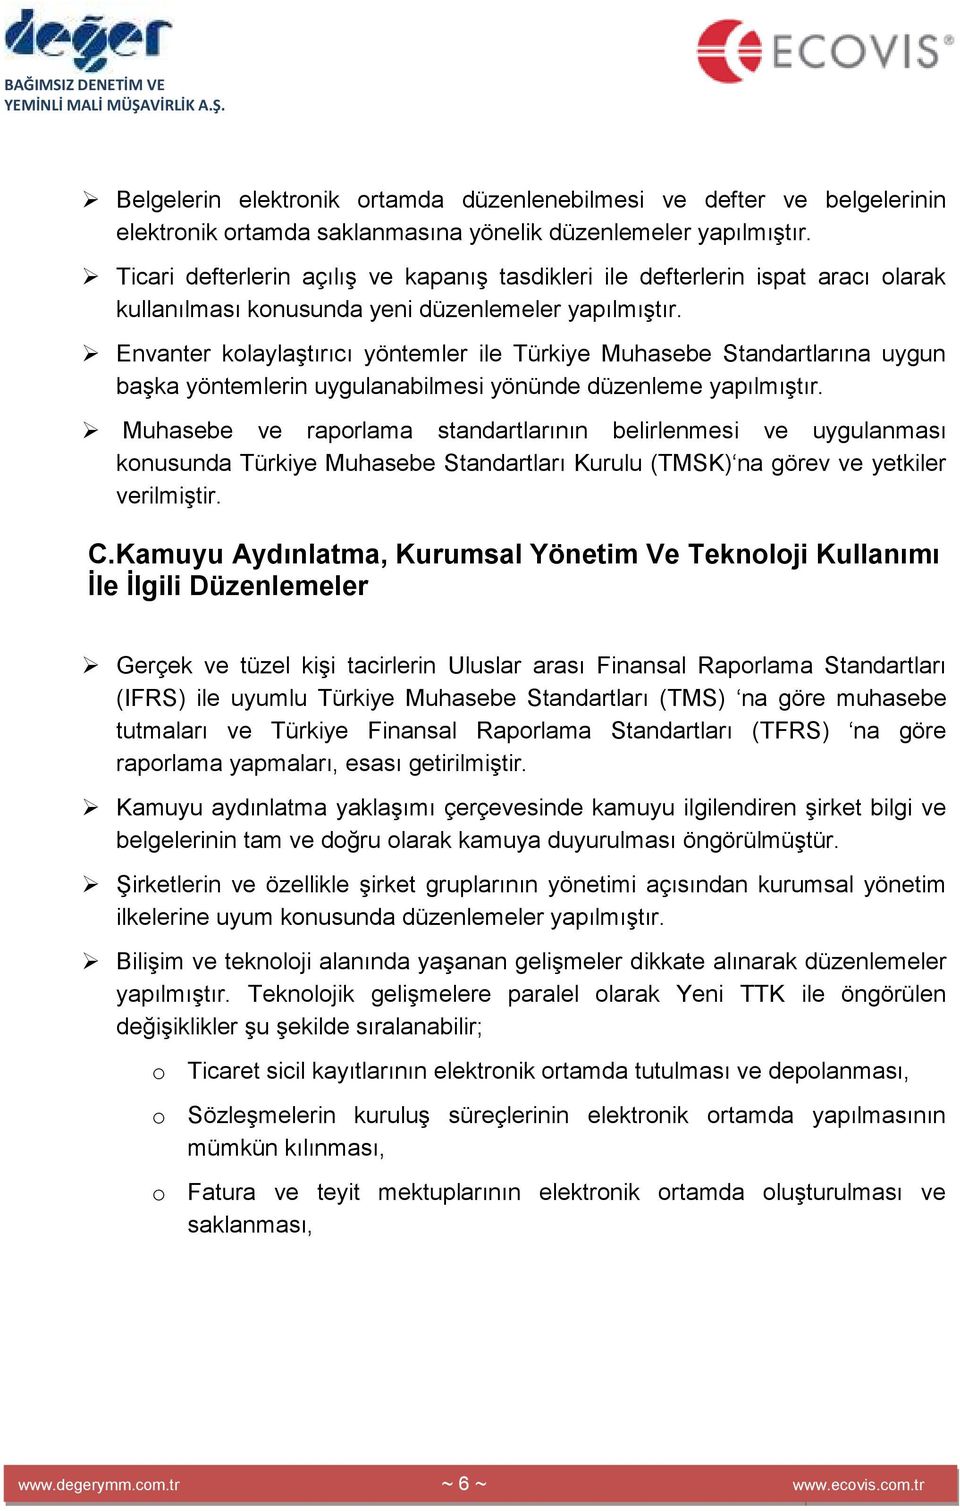 Envanter kolaylaştırıcı yöntemler ile Türkiye Muhasebe Standartlarına uygun başka yöntemlerin uygulanabilmesi yönünde düzenleme yapılmıştır.